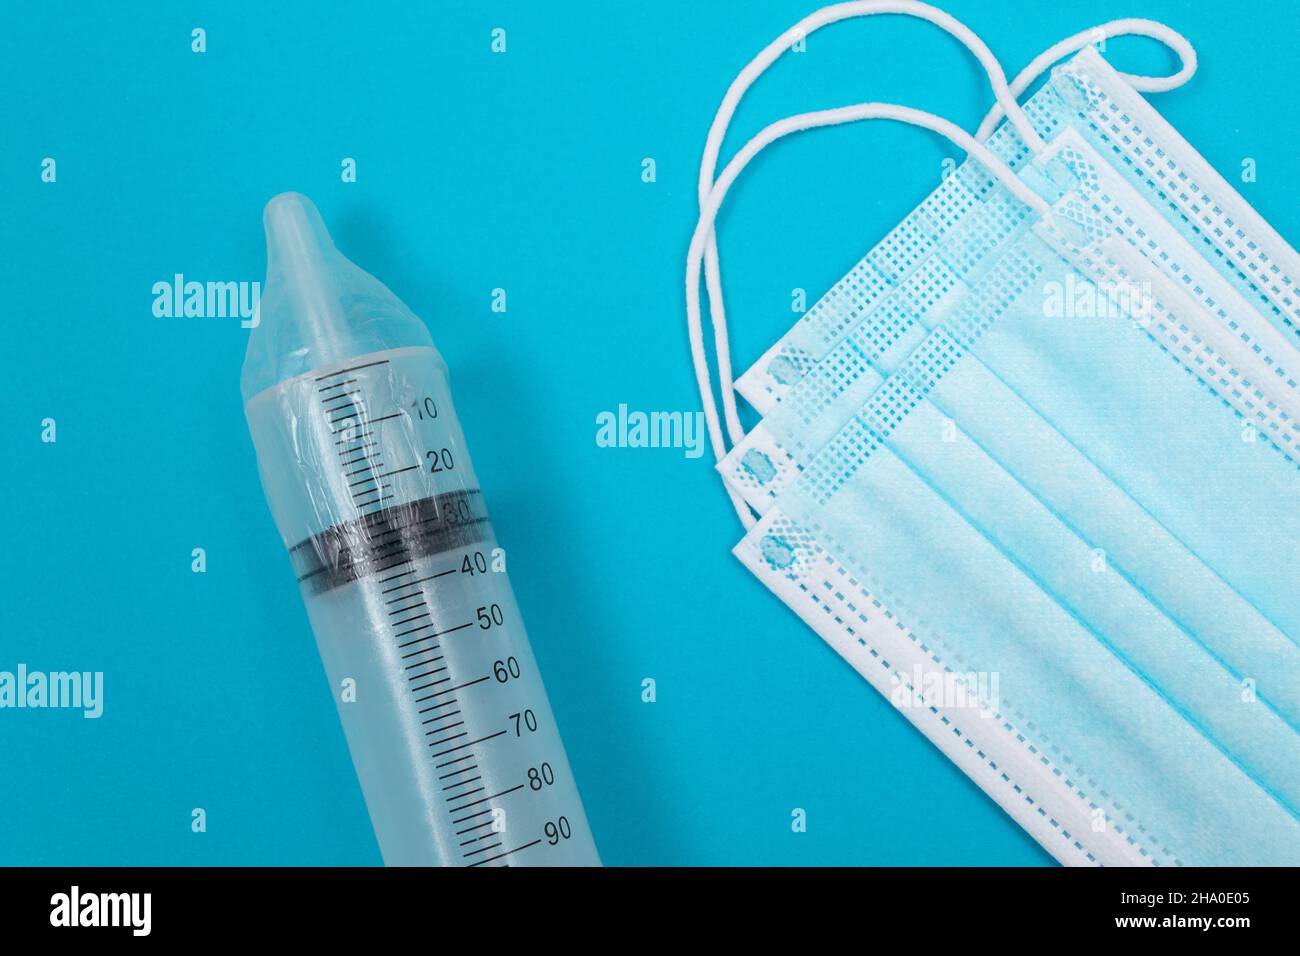 Vaccin sûr, anti-vaccin concept - seringue dans un condom se trouve sur la table bleue en clinique ou à l'hôpital. Méfiance à l'égard de la vaccination. Immunité naturelle. Scepticisme à propos du vaccin. Liberté et droits de l'homme Banque D'Images